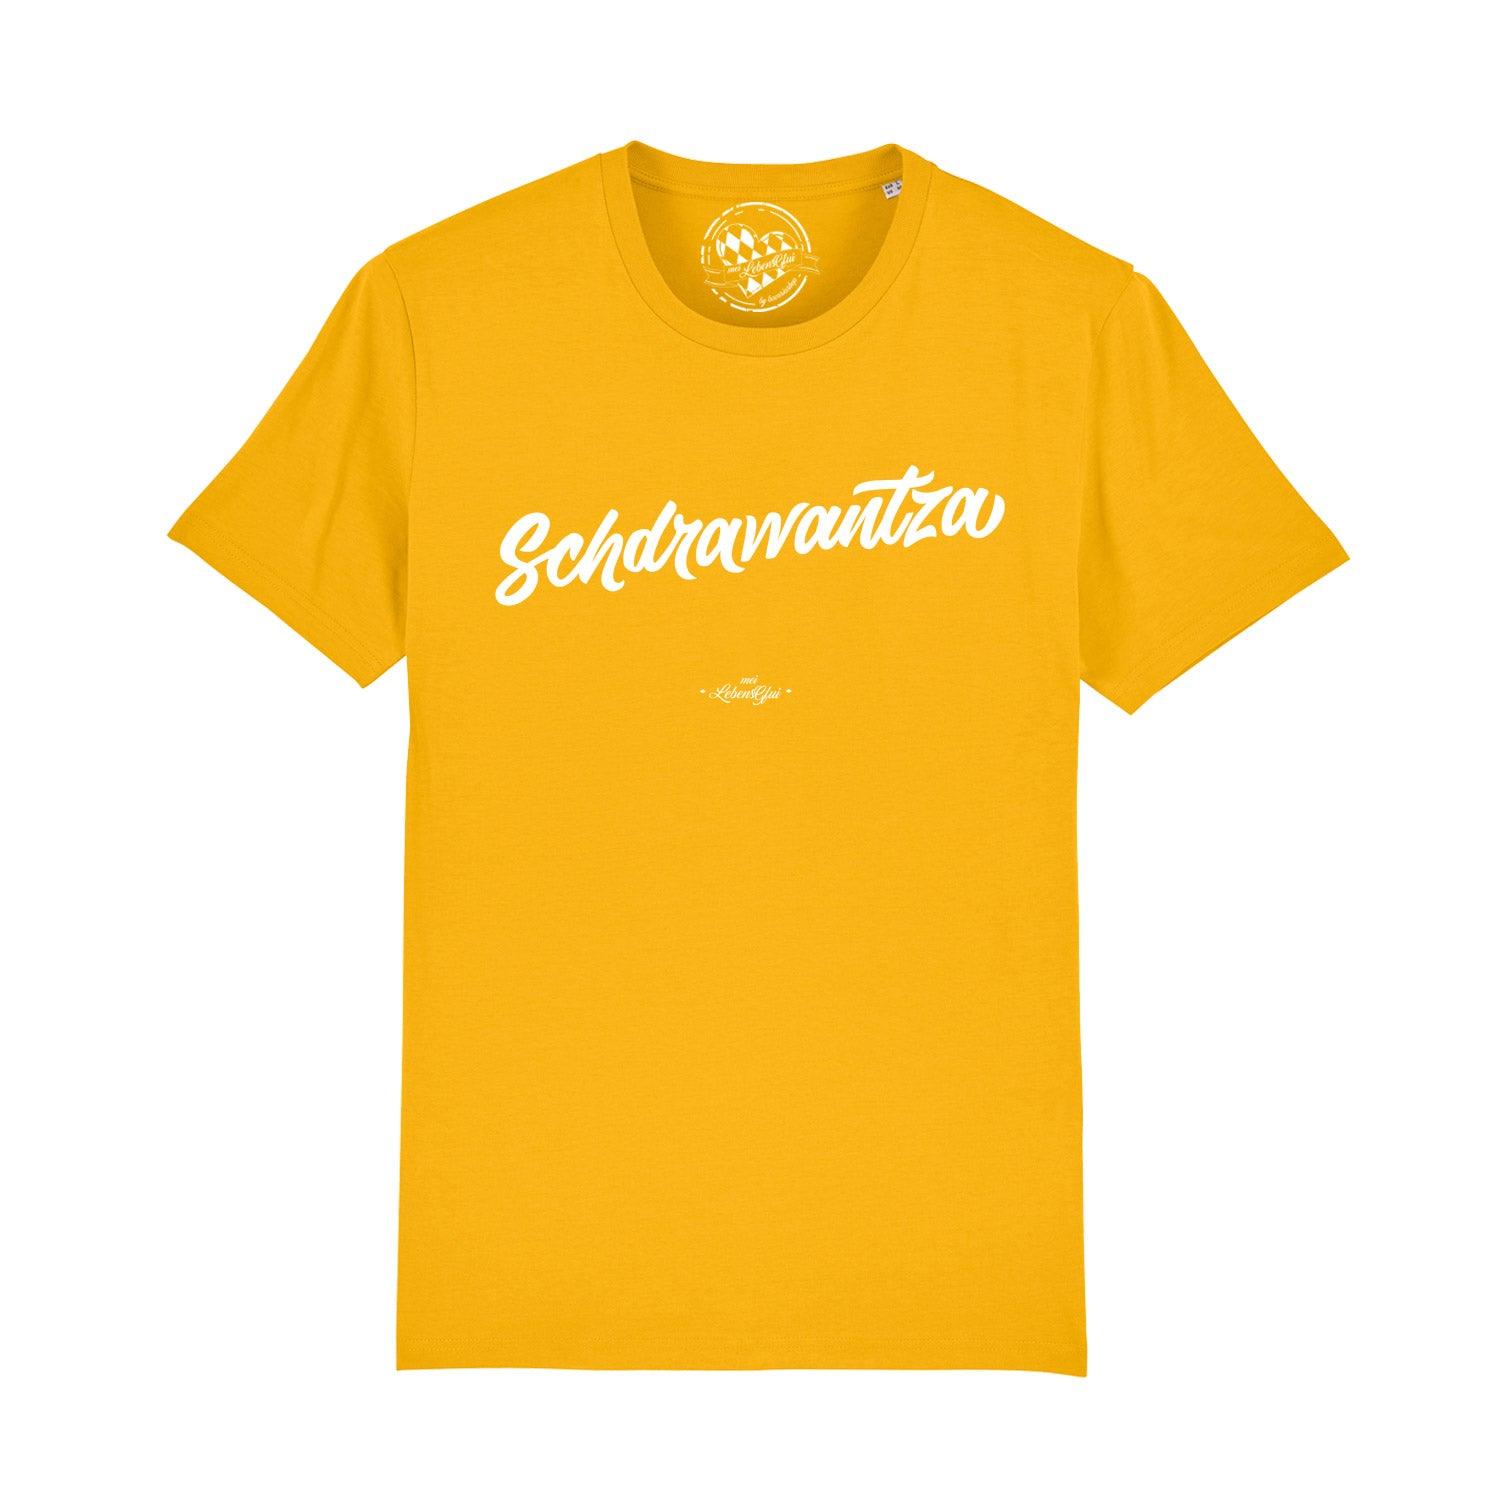 Herren T-Shirt "Schdrawantza" - bavariashop - mei LebensGfui